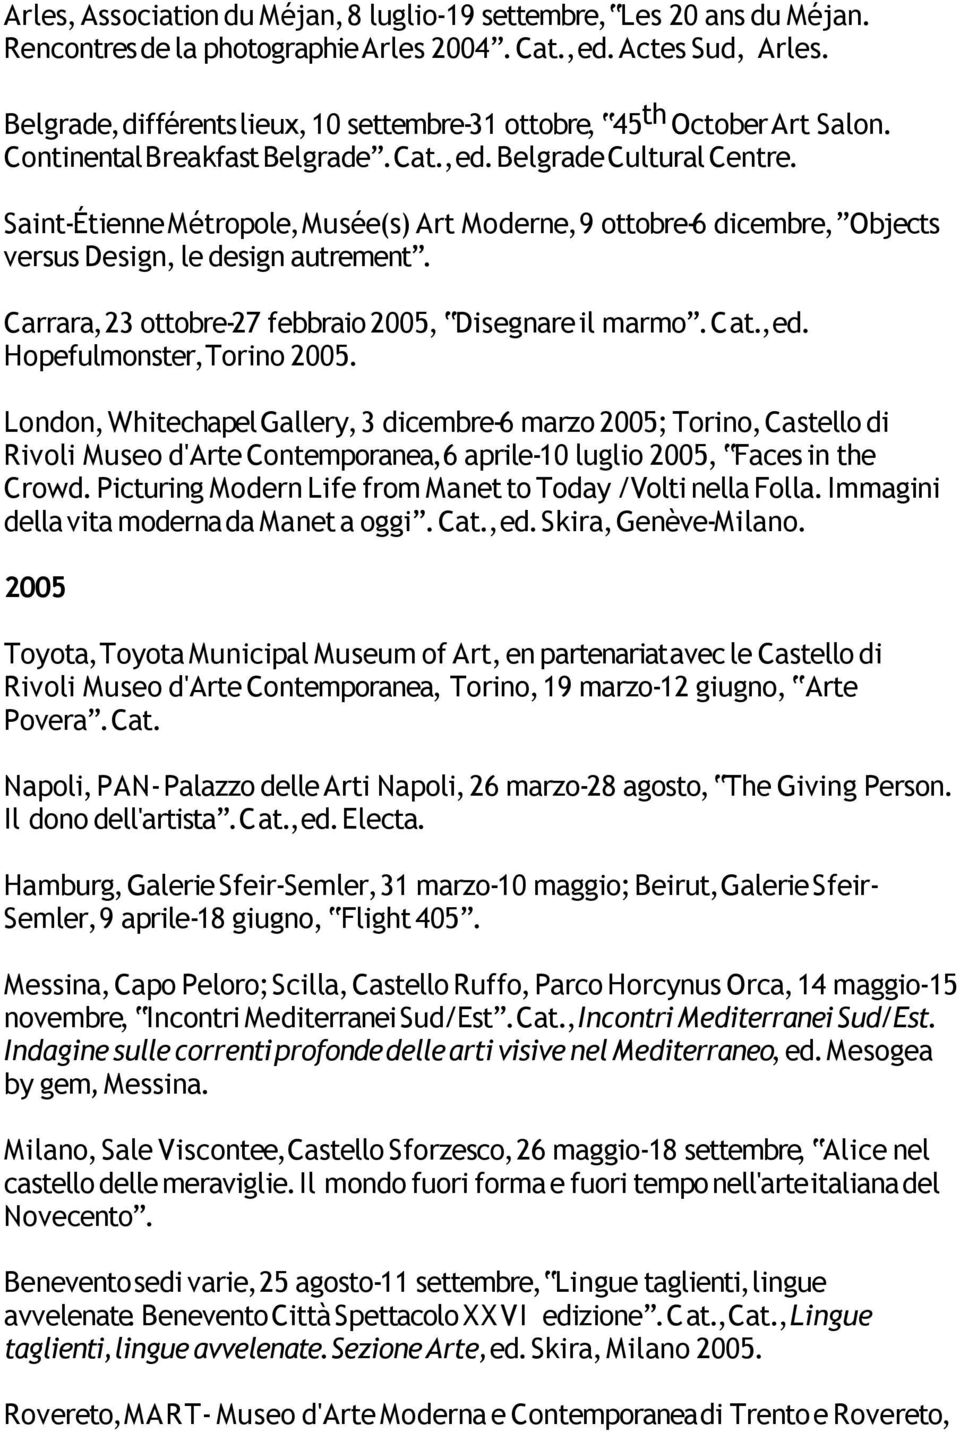 Saint-Étienne Métropole, Musée(s) Art Moderne, 9 ottobre-6 dicembre, Objects versus Design, le design autrement. Carrara, 23 ottobre-27 febbraio 2005, Disegnare il marmo., ed.